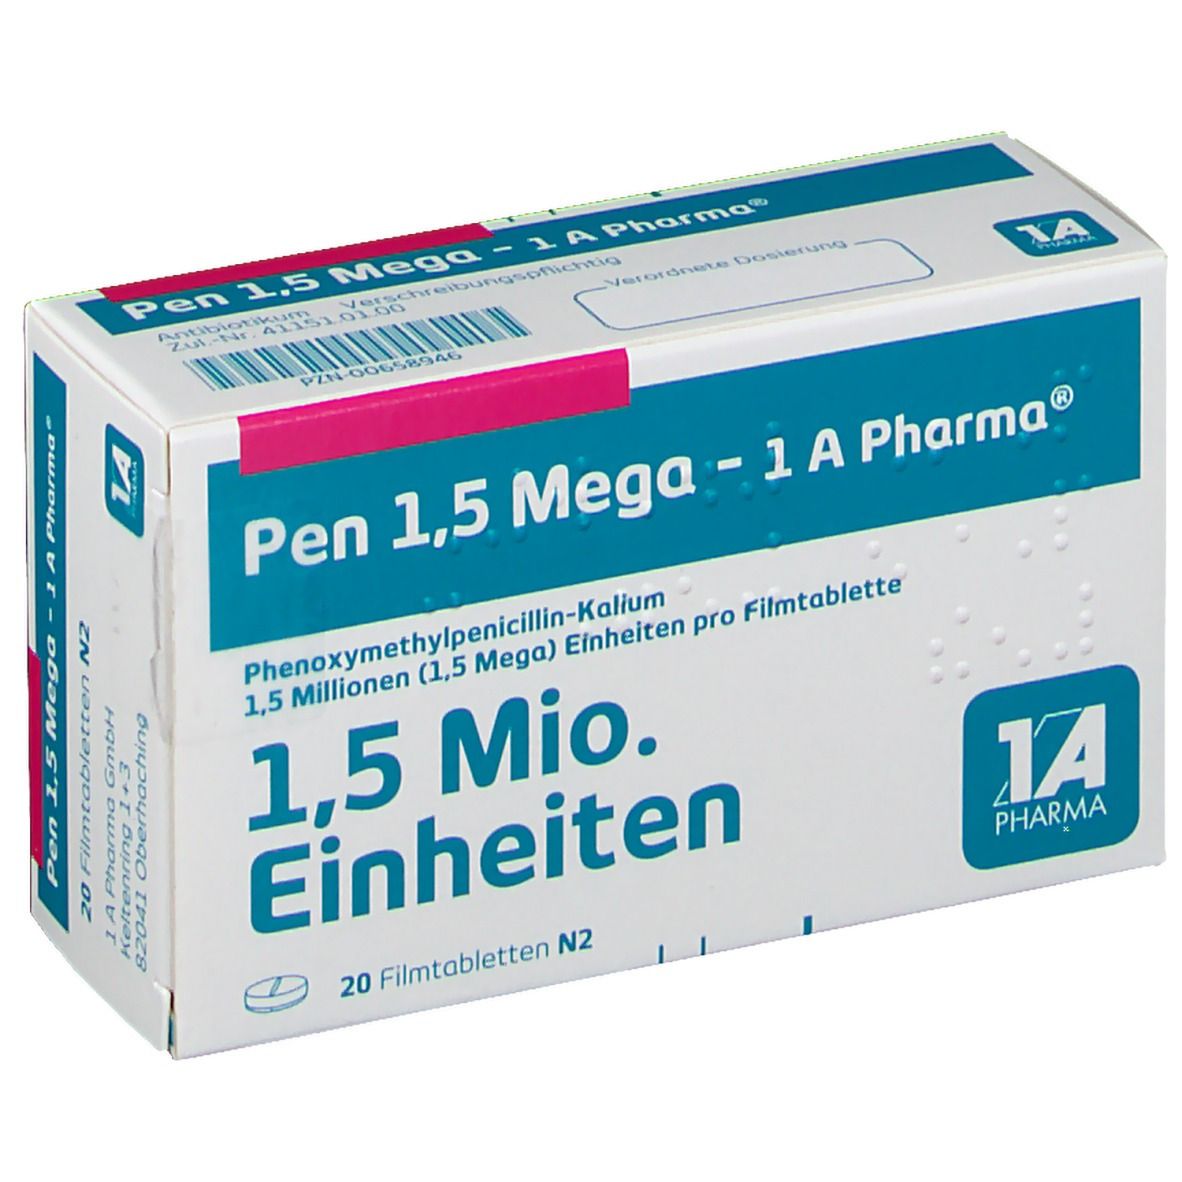 Pen 1.5 Mega 1A Pharma®